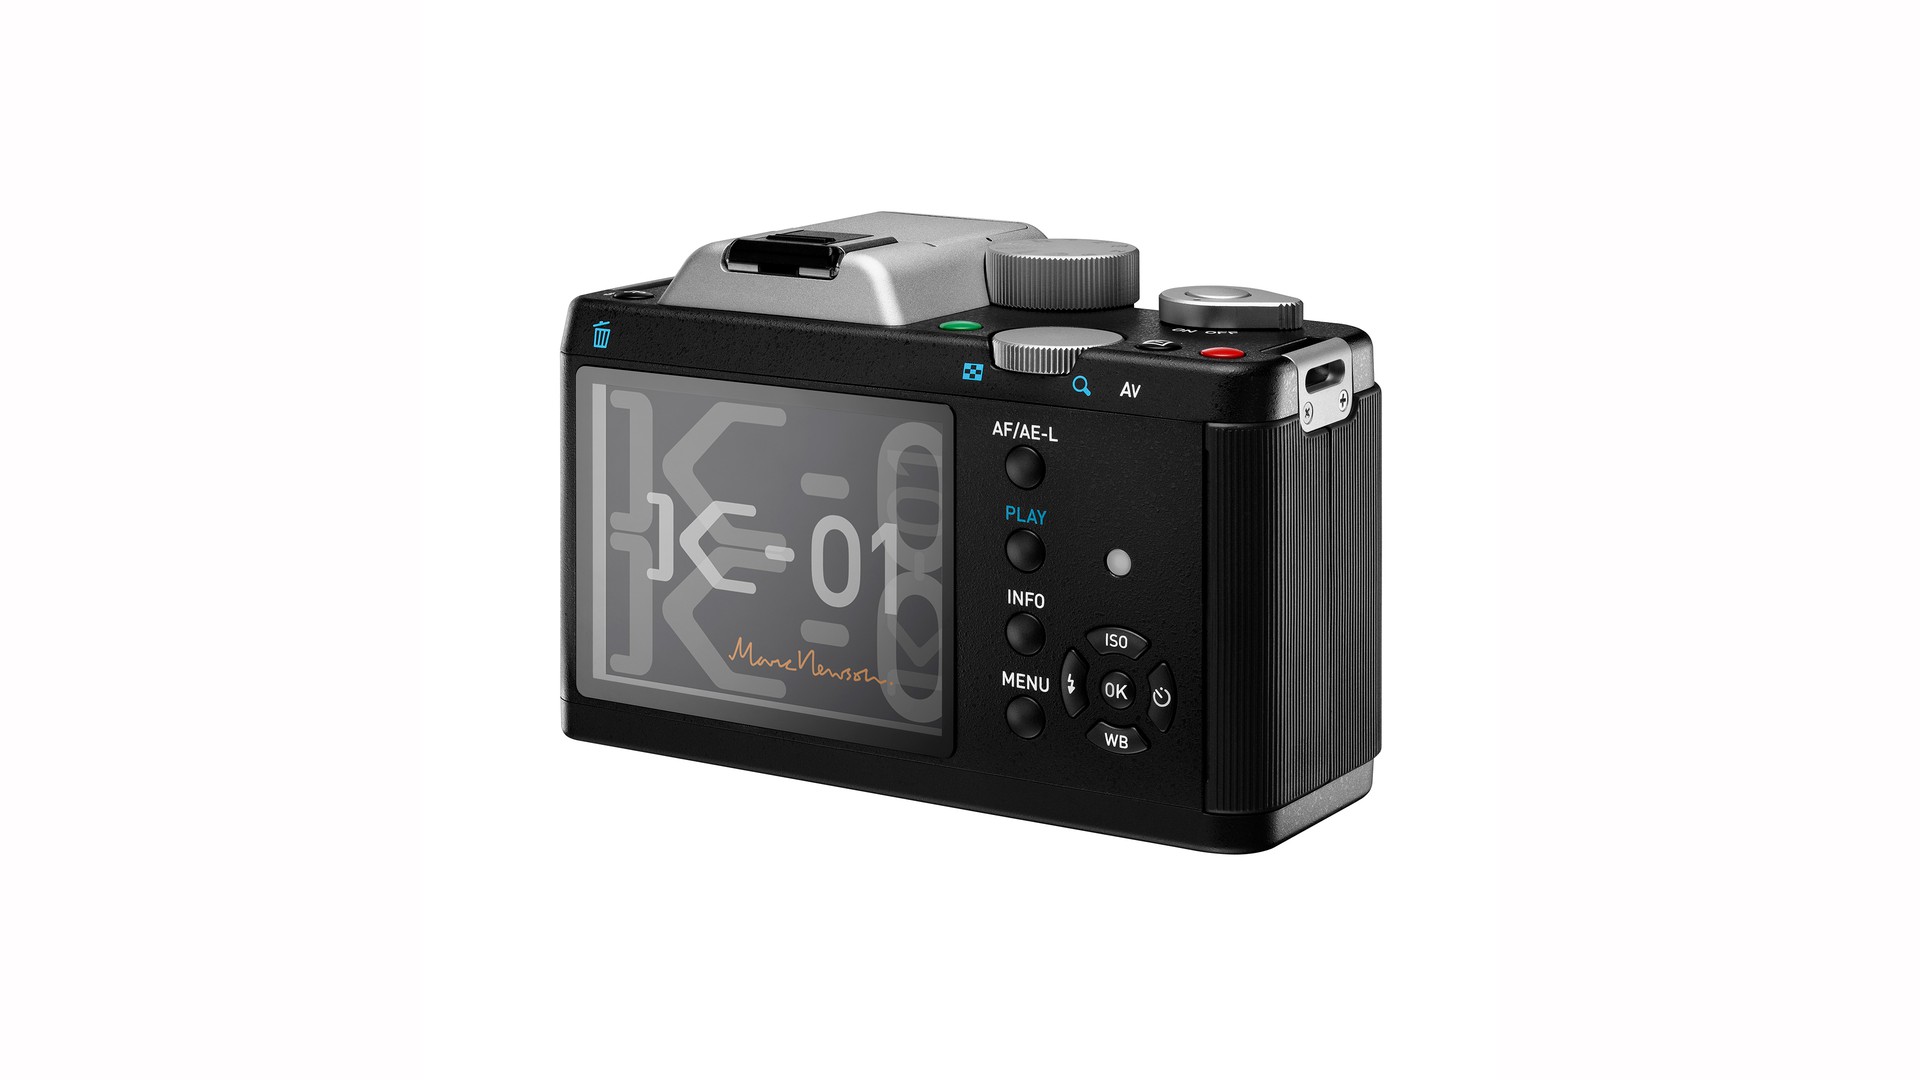 K-01 Digital Camera